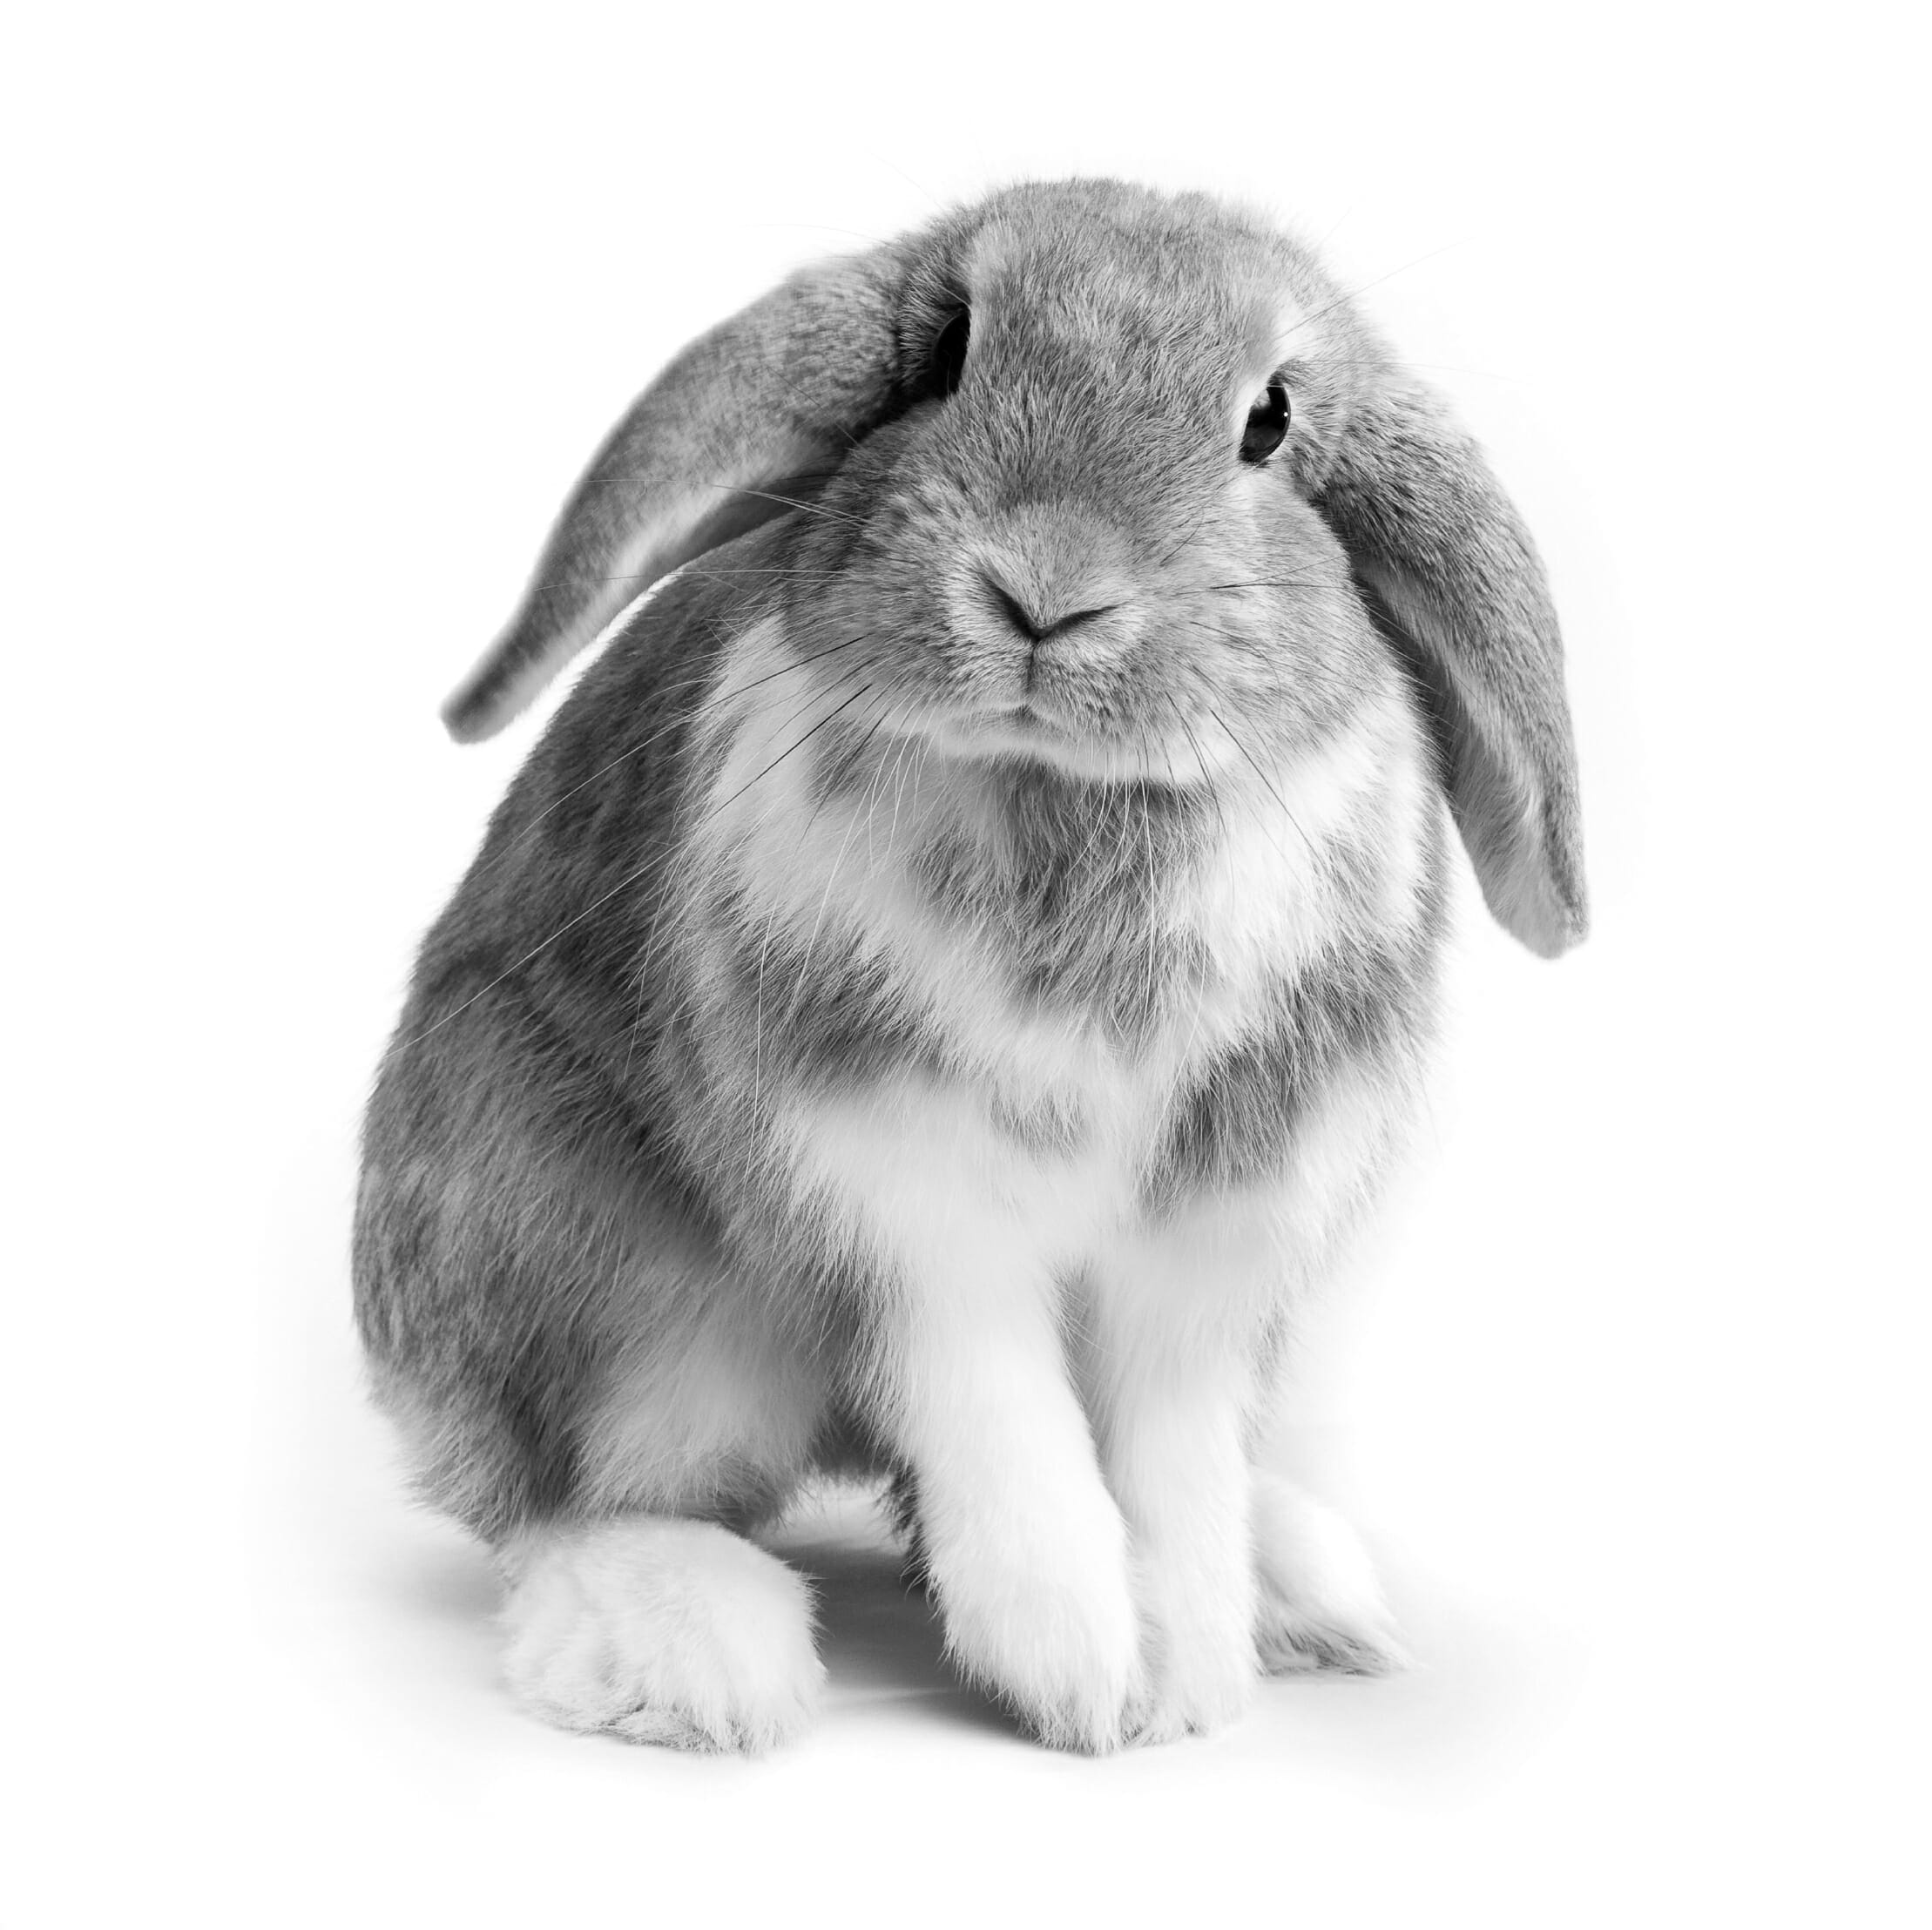 Rabbit Care Guidelines from MedVet